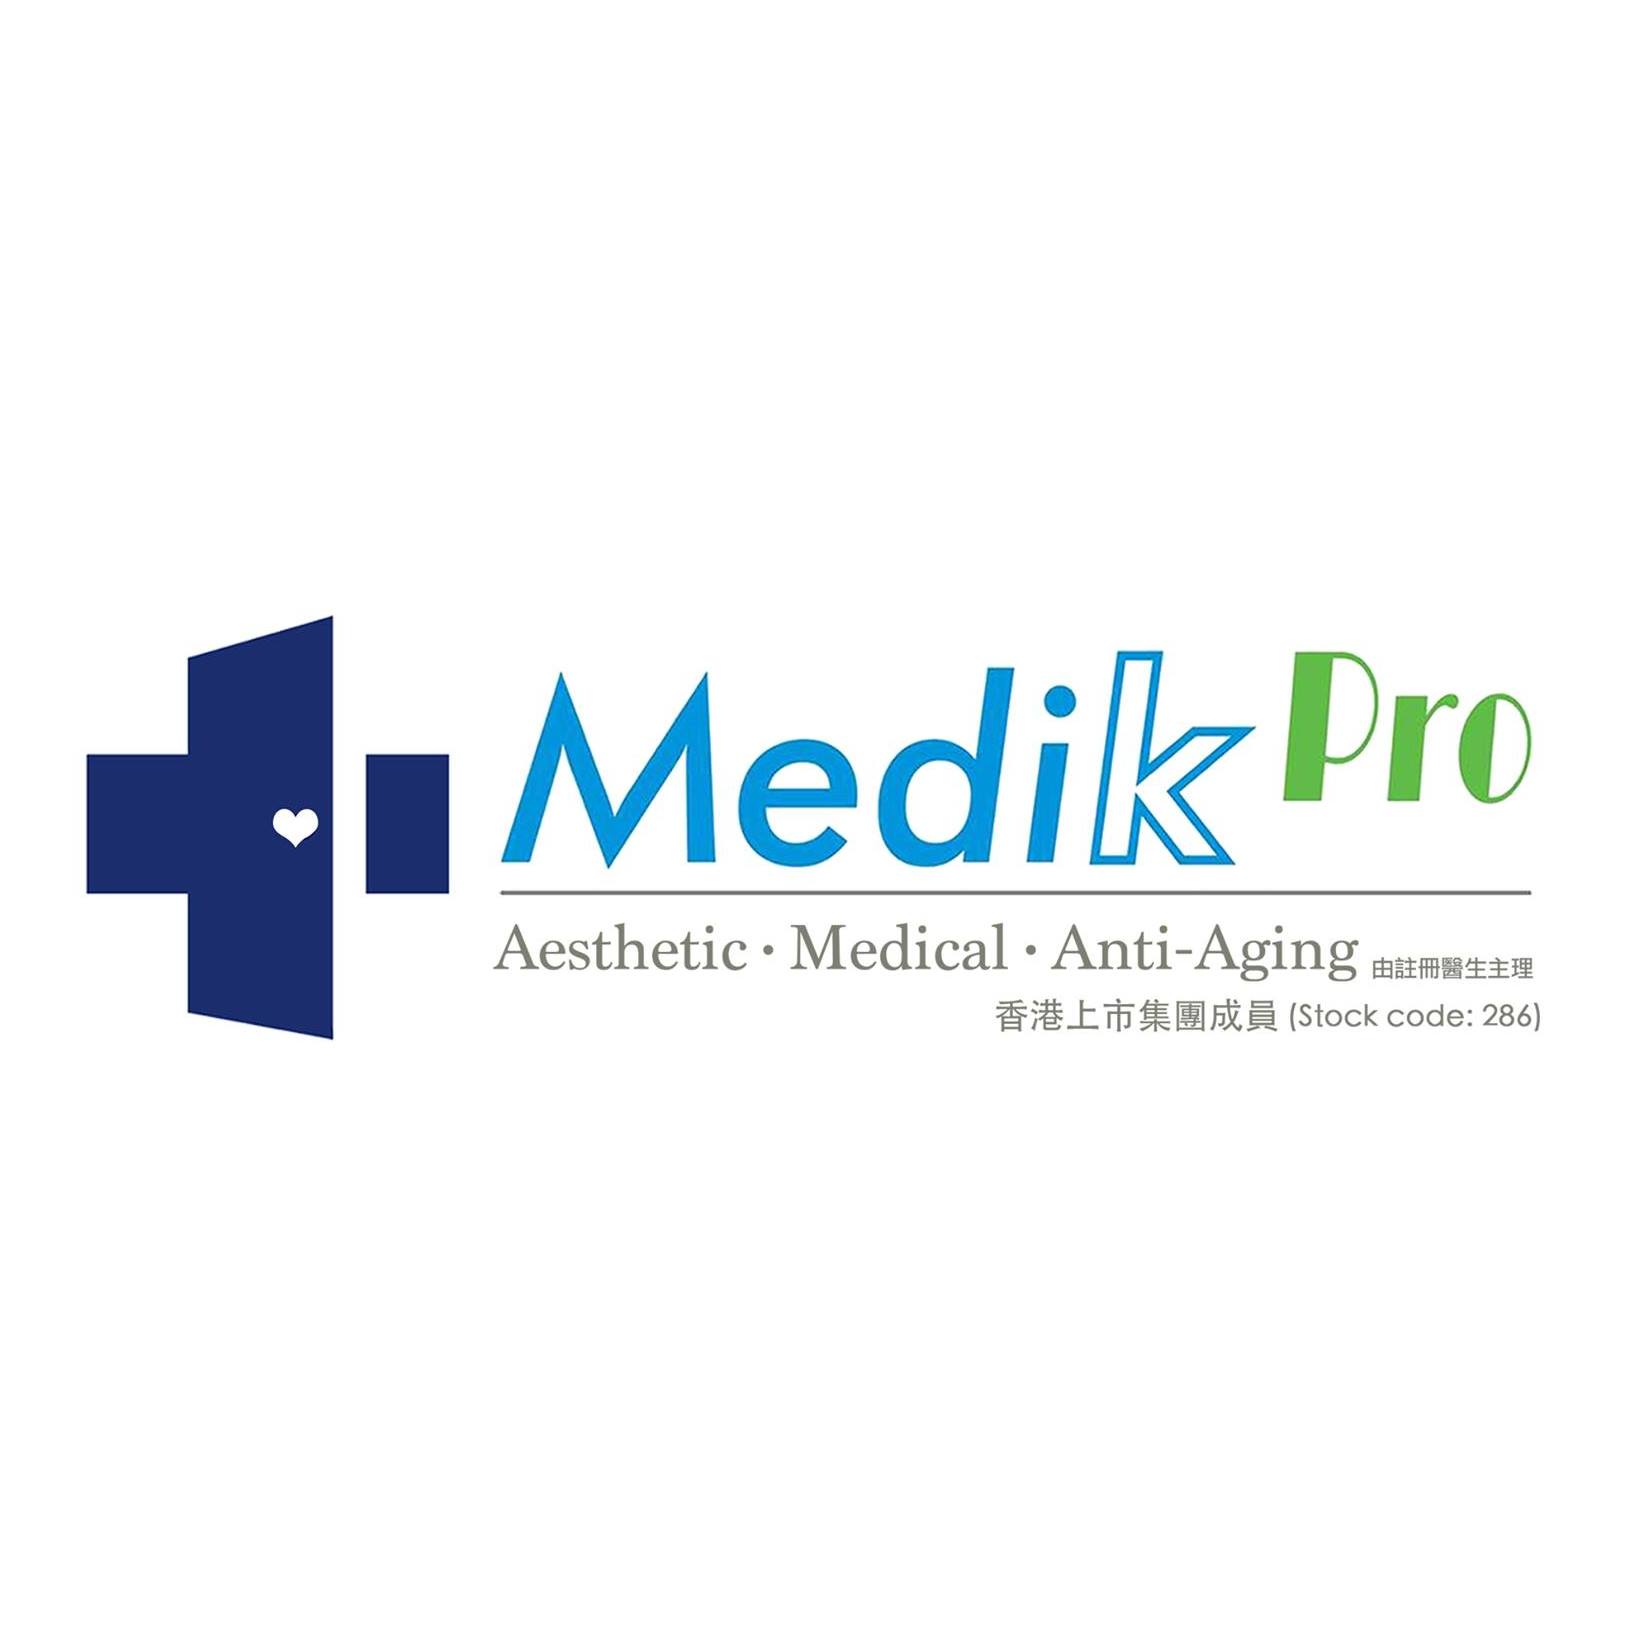 修眉/眼睫毛: Medik Pro (佐敦分店)